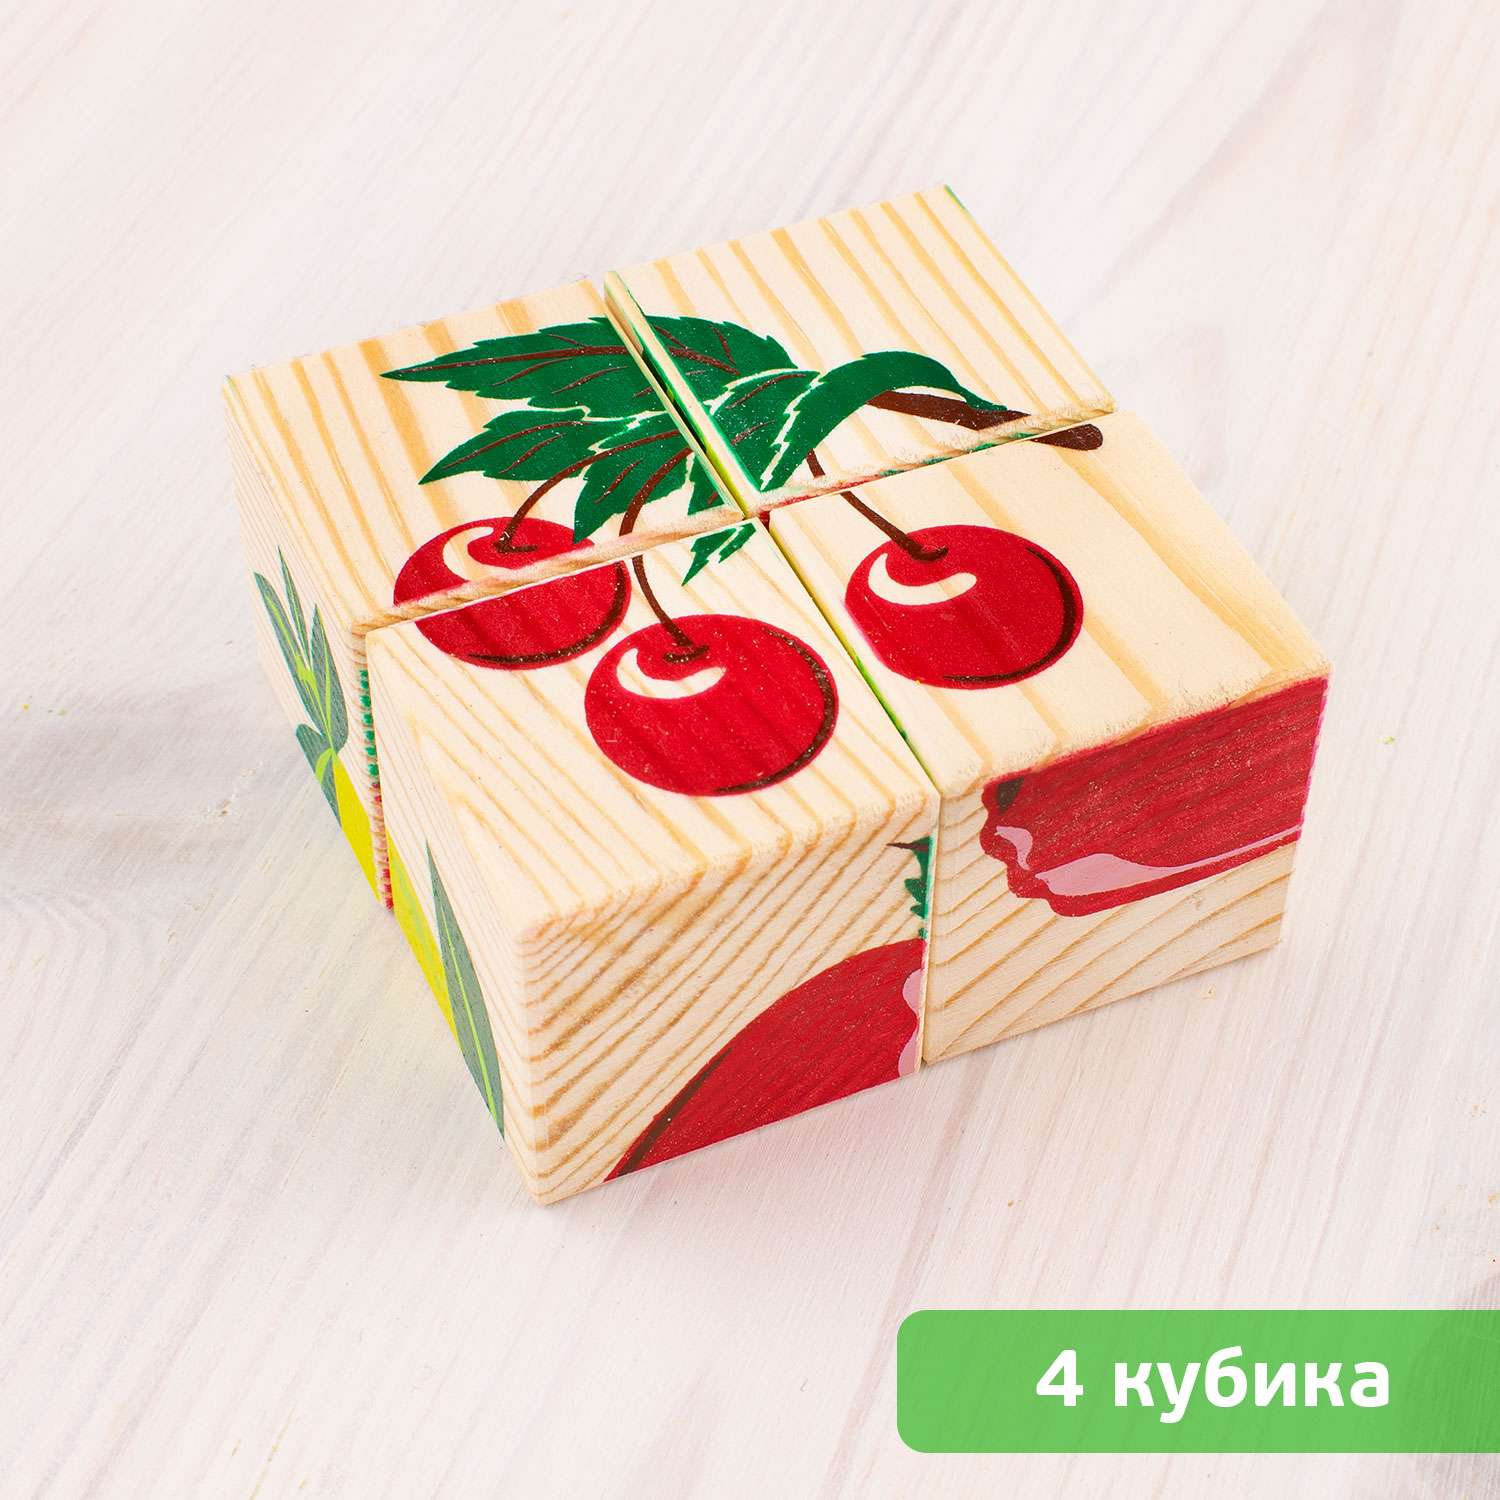 Кубики детские Томик Фрукты-ягоды 4 штуки 3333-2 - фото 6